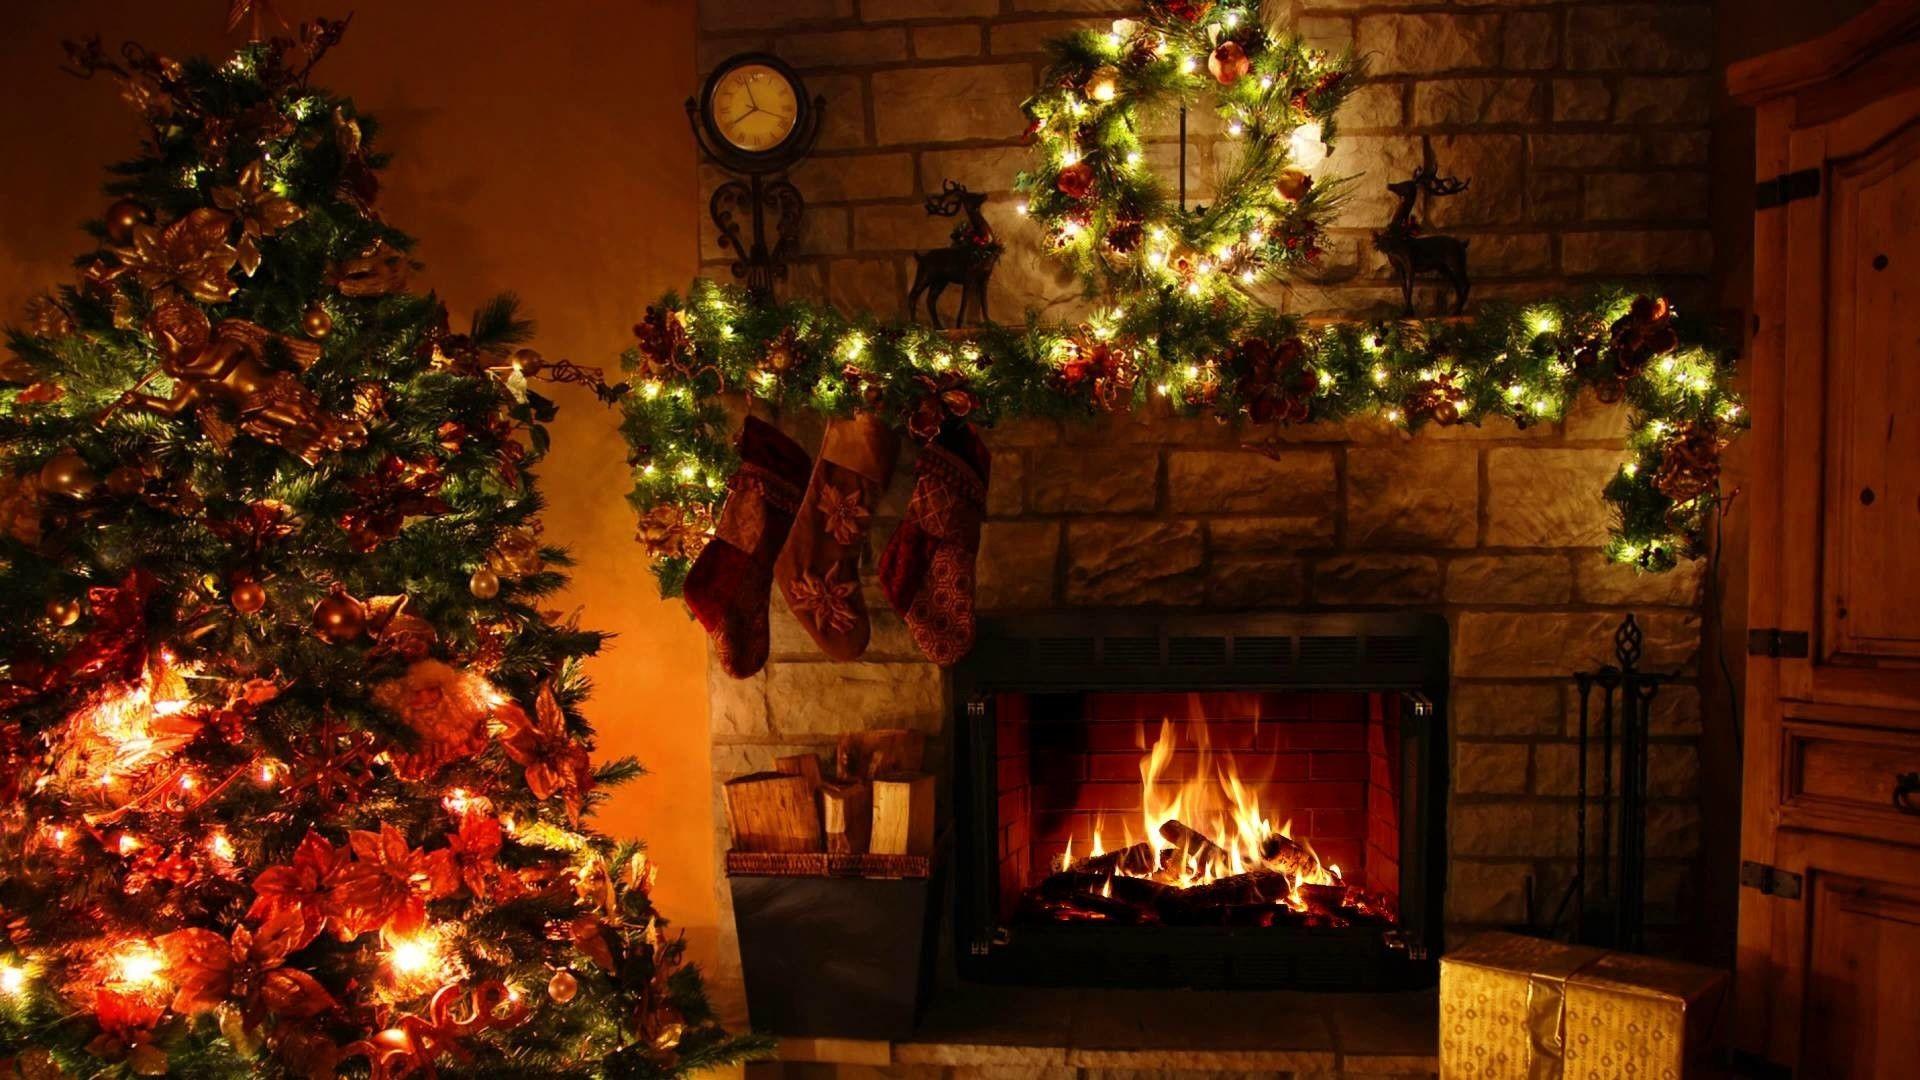 Bạn đang tìm kiếm một hình nền tuyệt đẹp cho màn hình điện thoại của mình vào dịp Giáng sinh? Hãy cùng đắm mình trong không khí ấm áp của đêm lửa trại tại hang hình nền giáng sinh. Bức ảnh đẹp sẽ khiến bạn cảm thấy thật sự náo nức và lấp đầy niềm vui của mùa lễ hội.